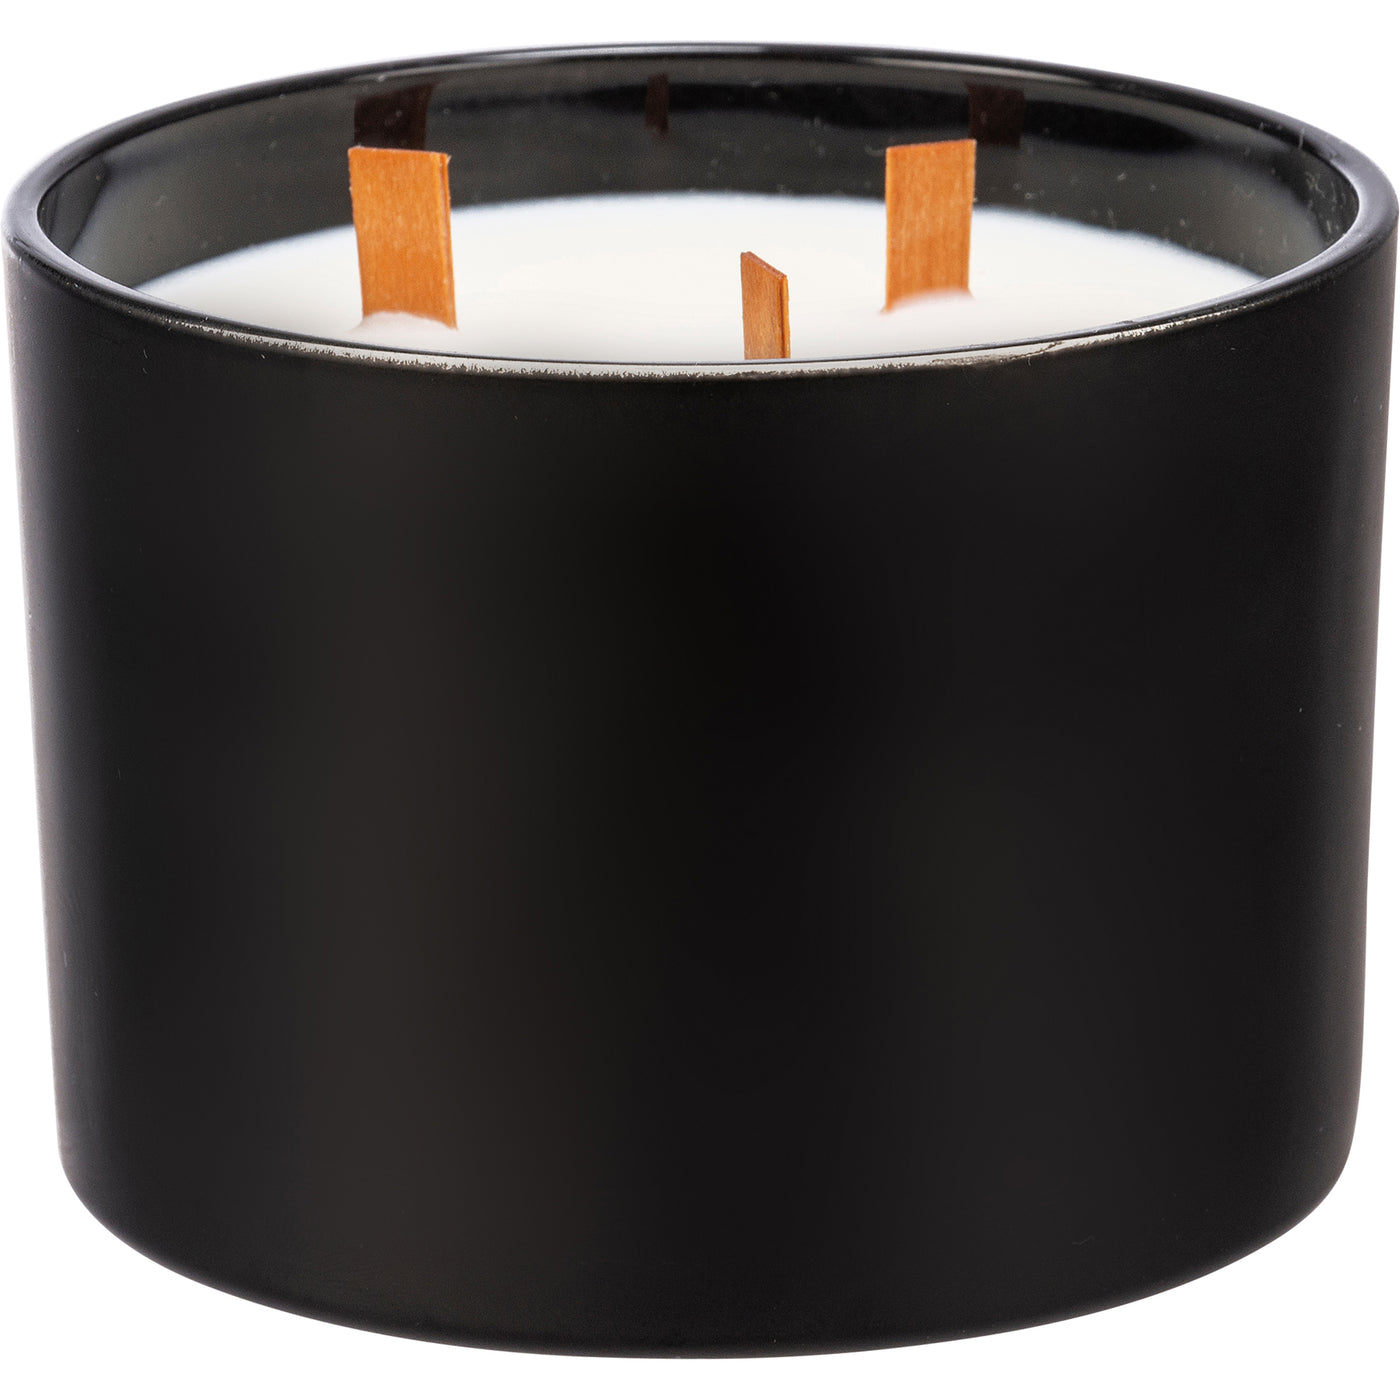 Surprise Me Sale 🤭 Foodie 14 oz Wood Wick Jar Candle